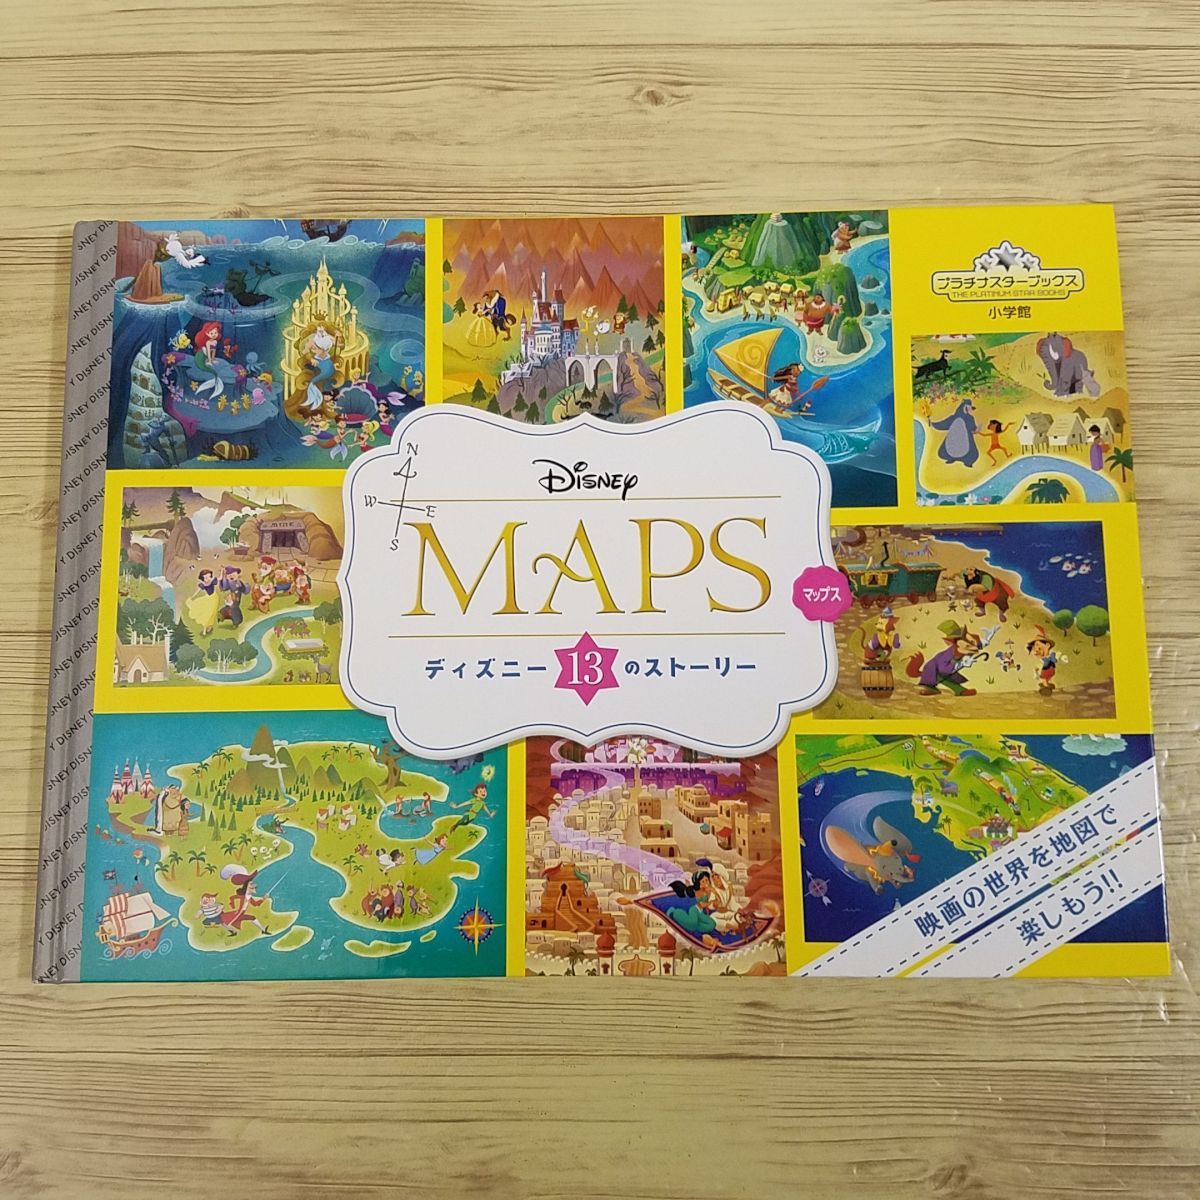  игра книга с картинками [Disney MAPS Disney 13. -тактный - Lee ( покрытие нет )] фильм. мир . карта . можно наслаждаться . поиск Disney книга с картинками 